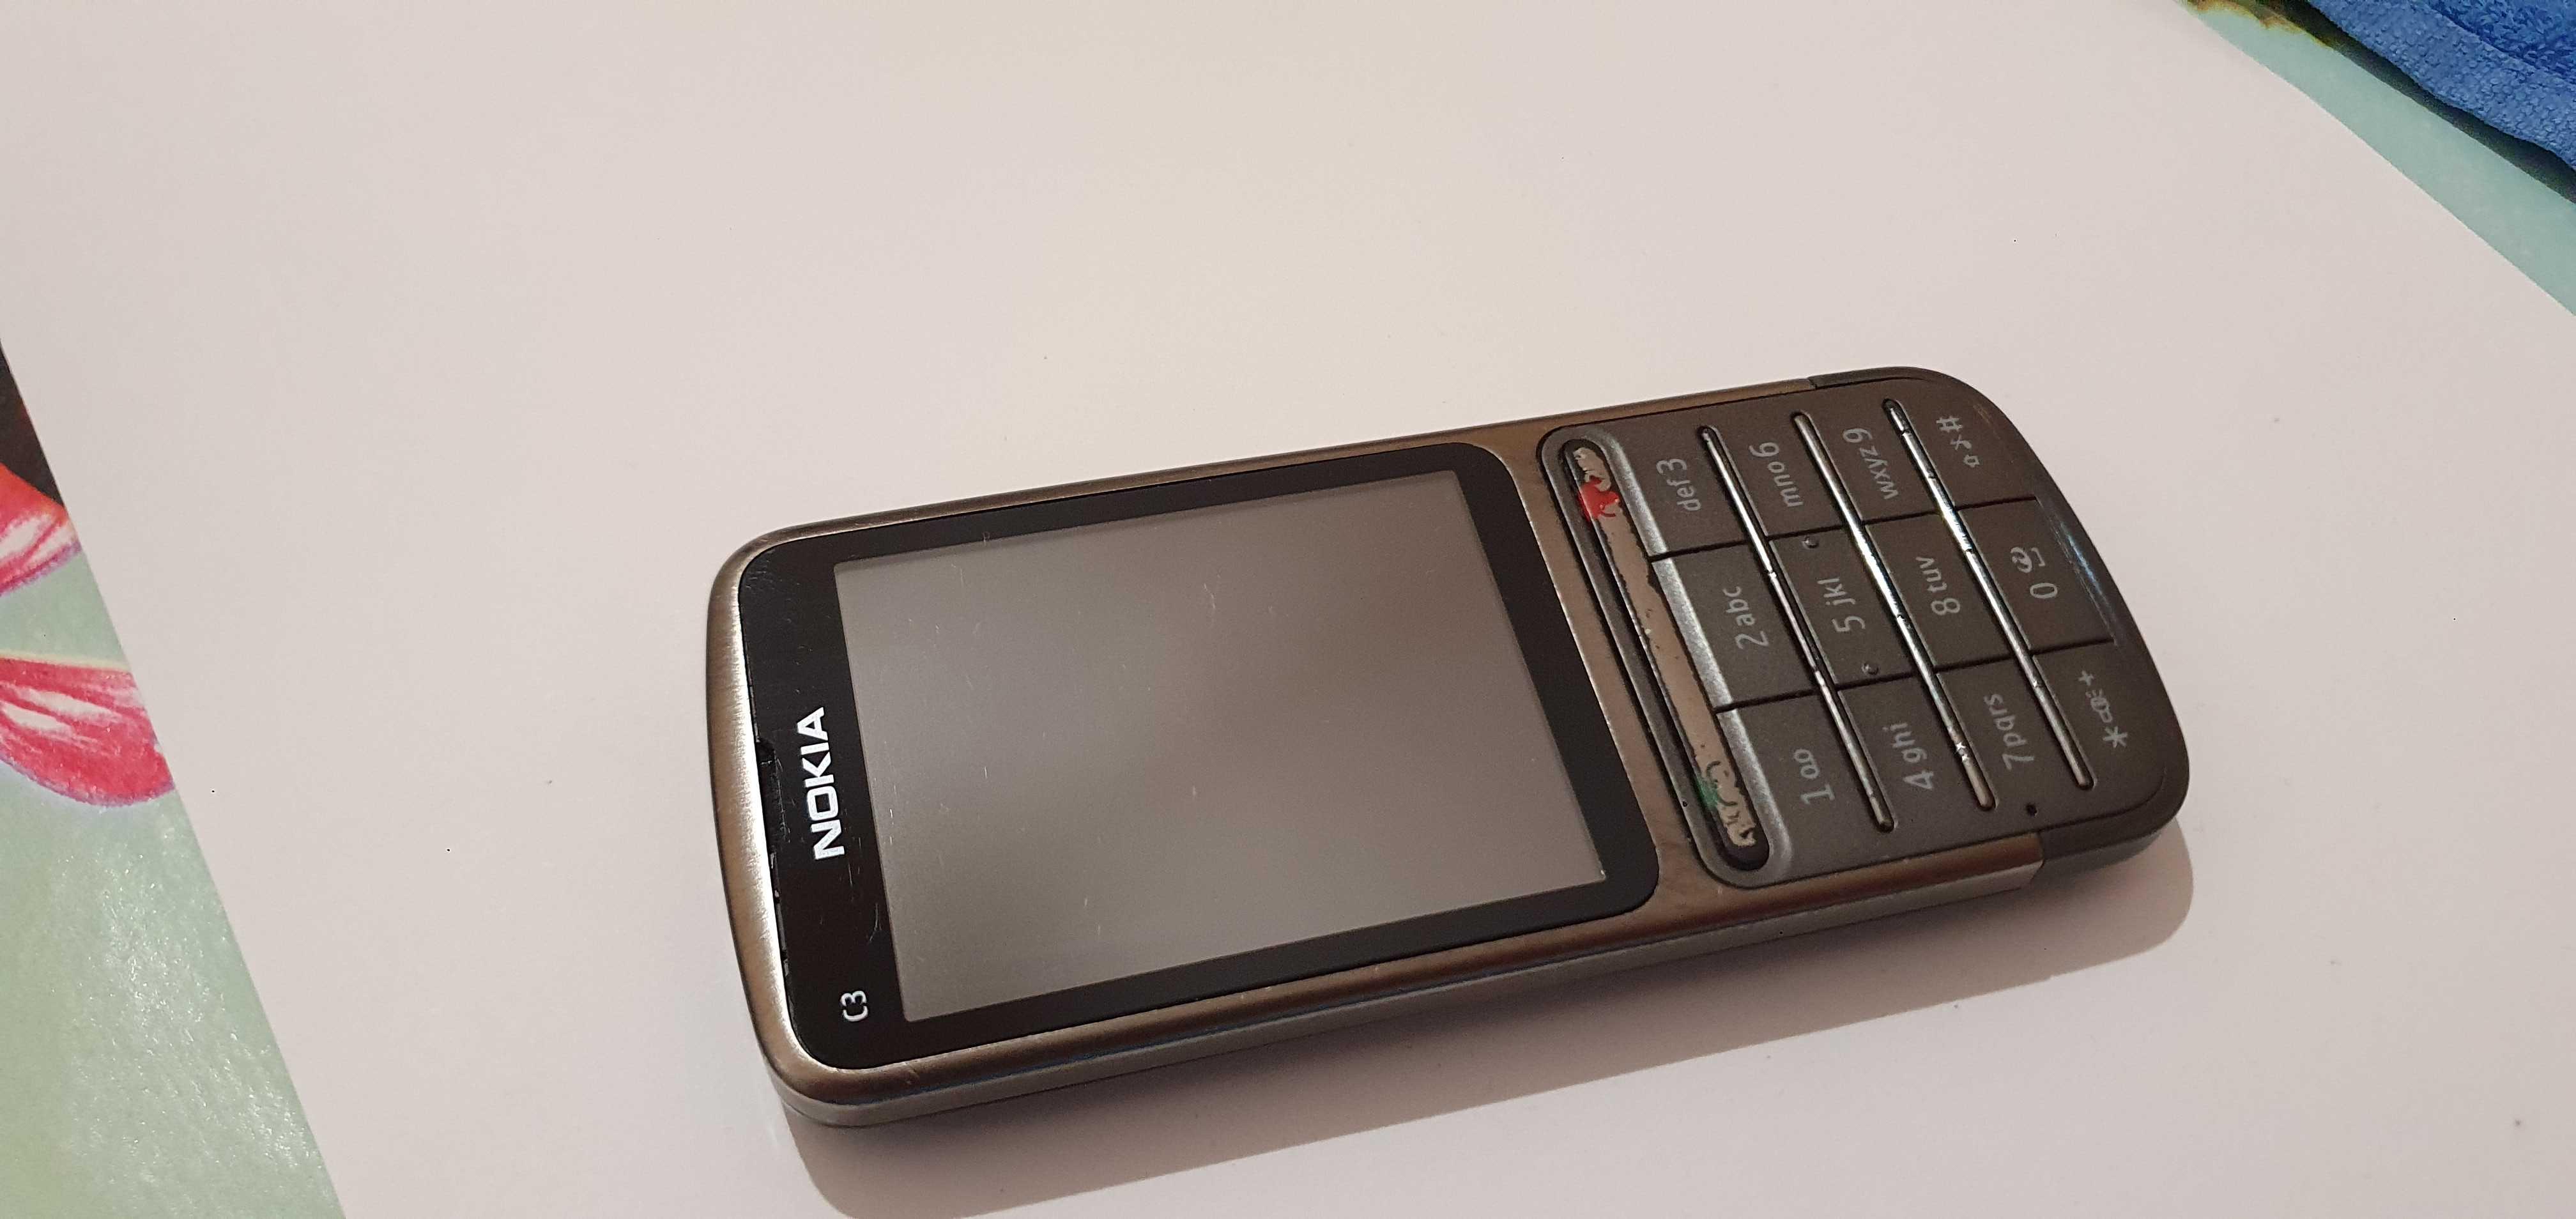 Nokia C3-01 Warm Grey - Mobily a chytrá elektronika